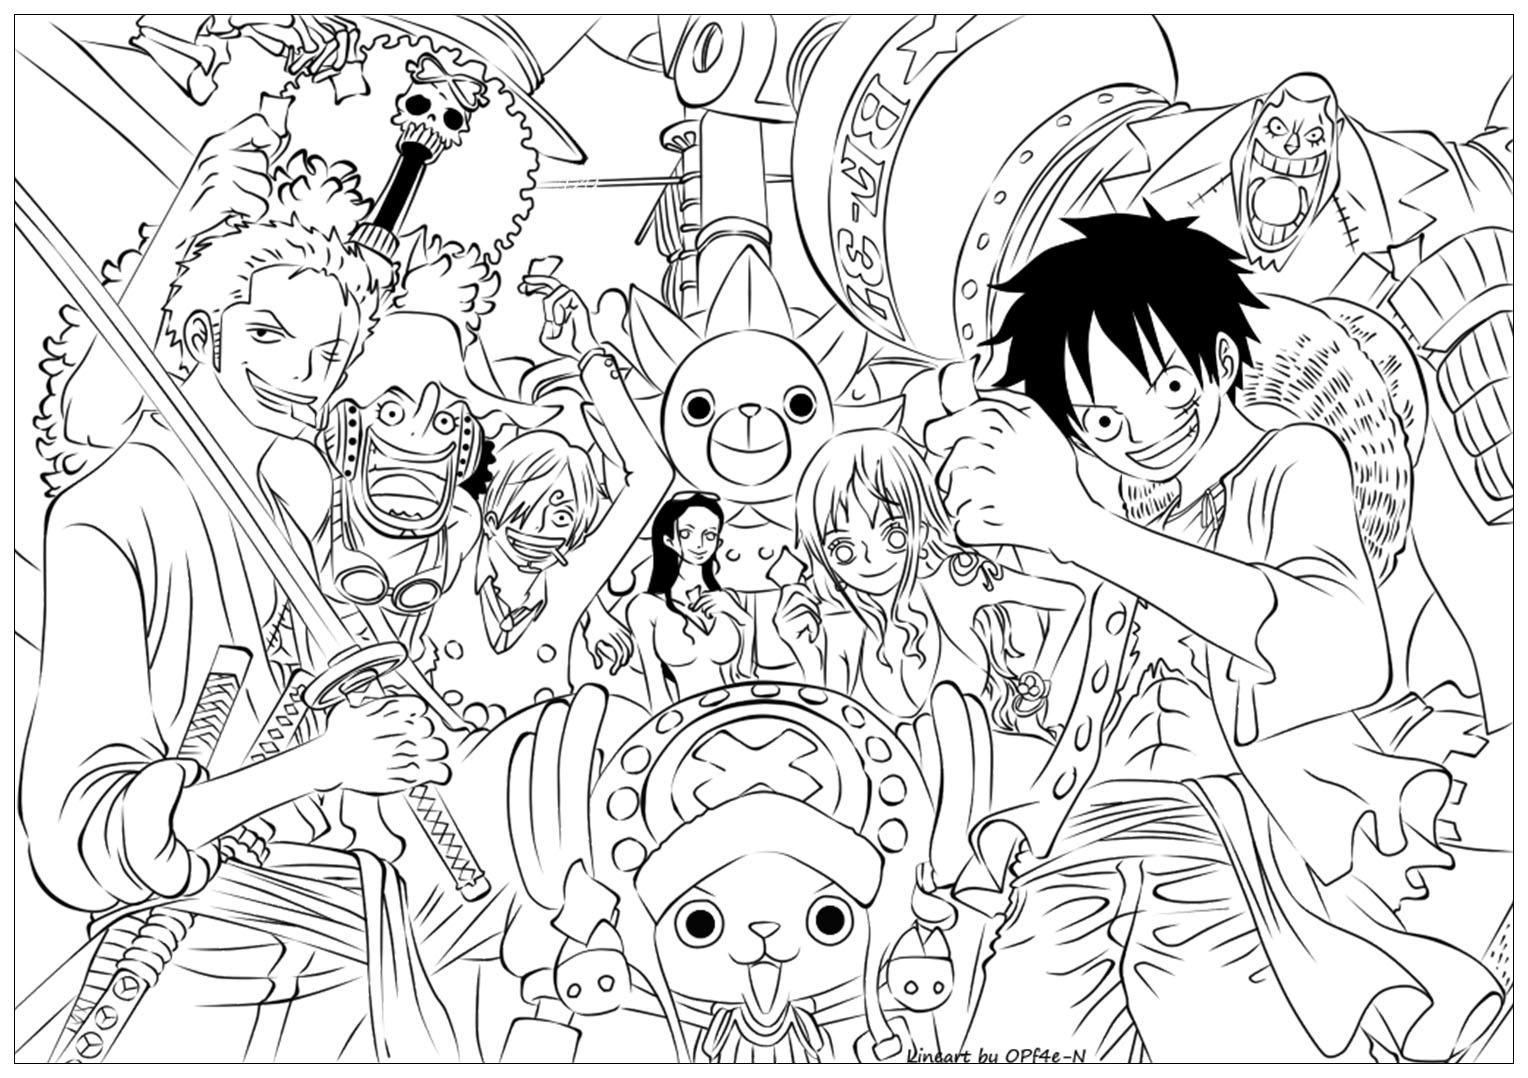 Top 101+ Hình Nền One Piece 4K Cho Máy Tính Điện Thoại